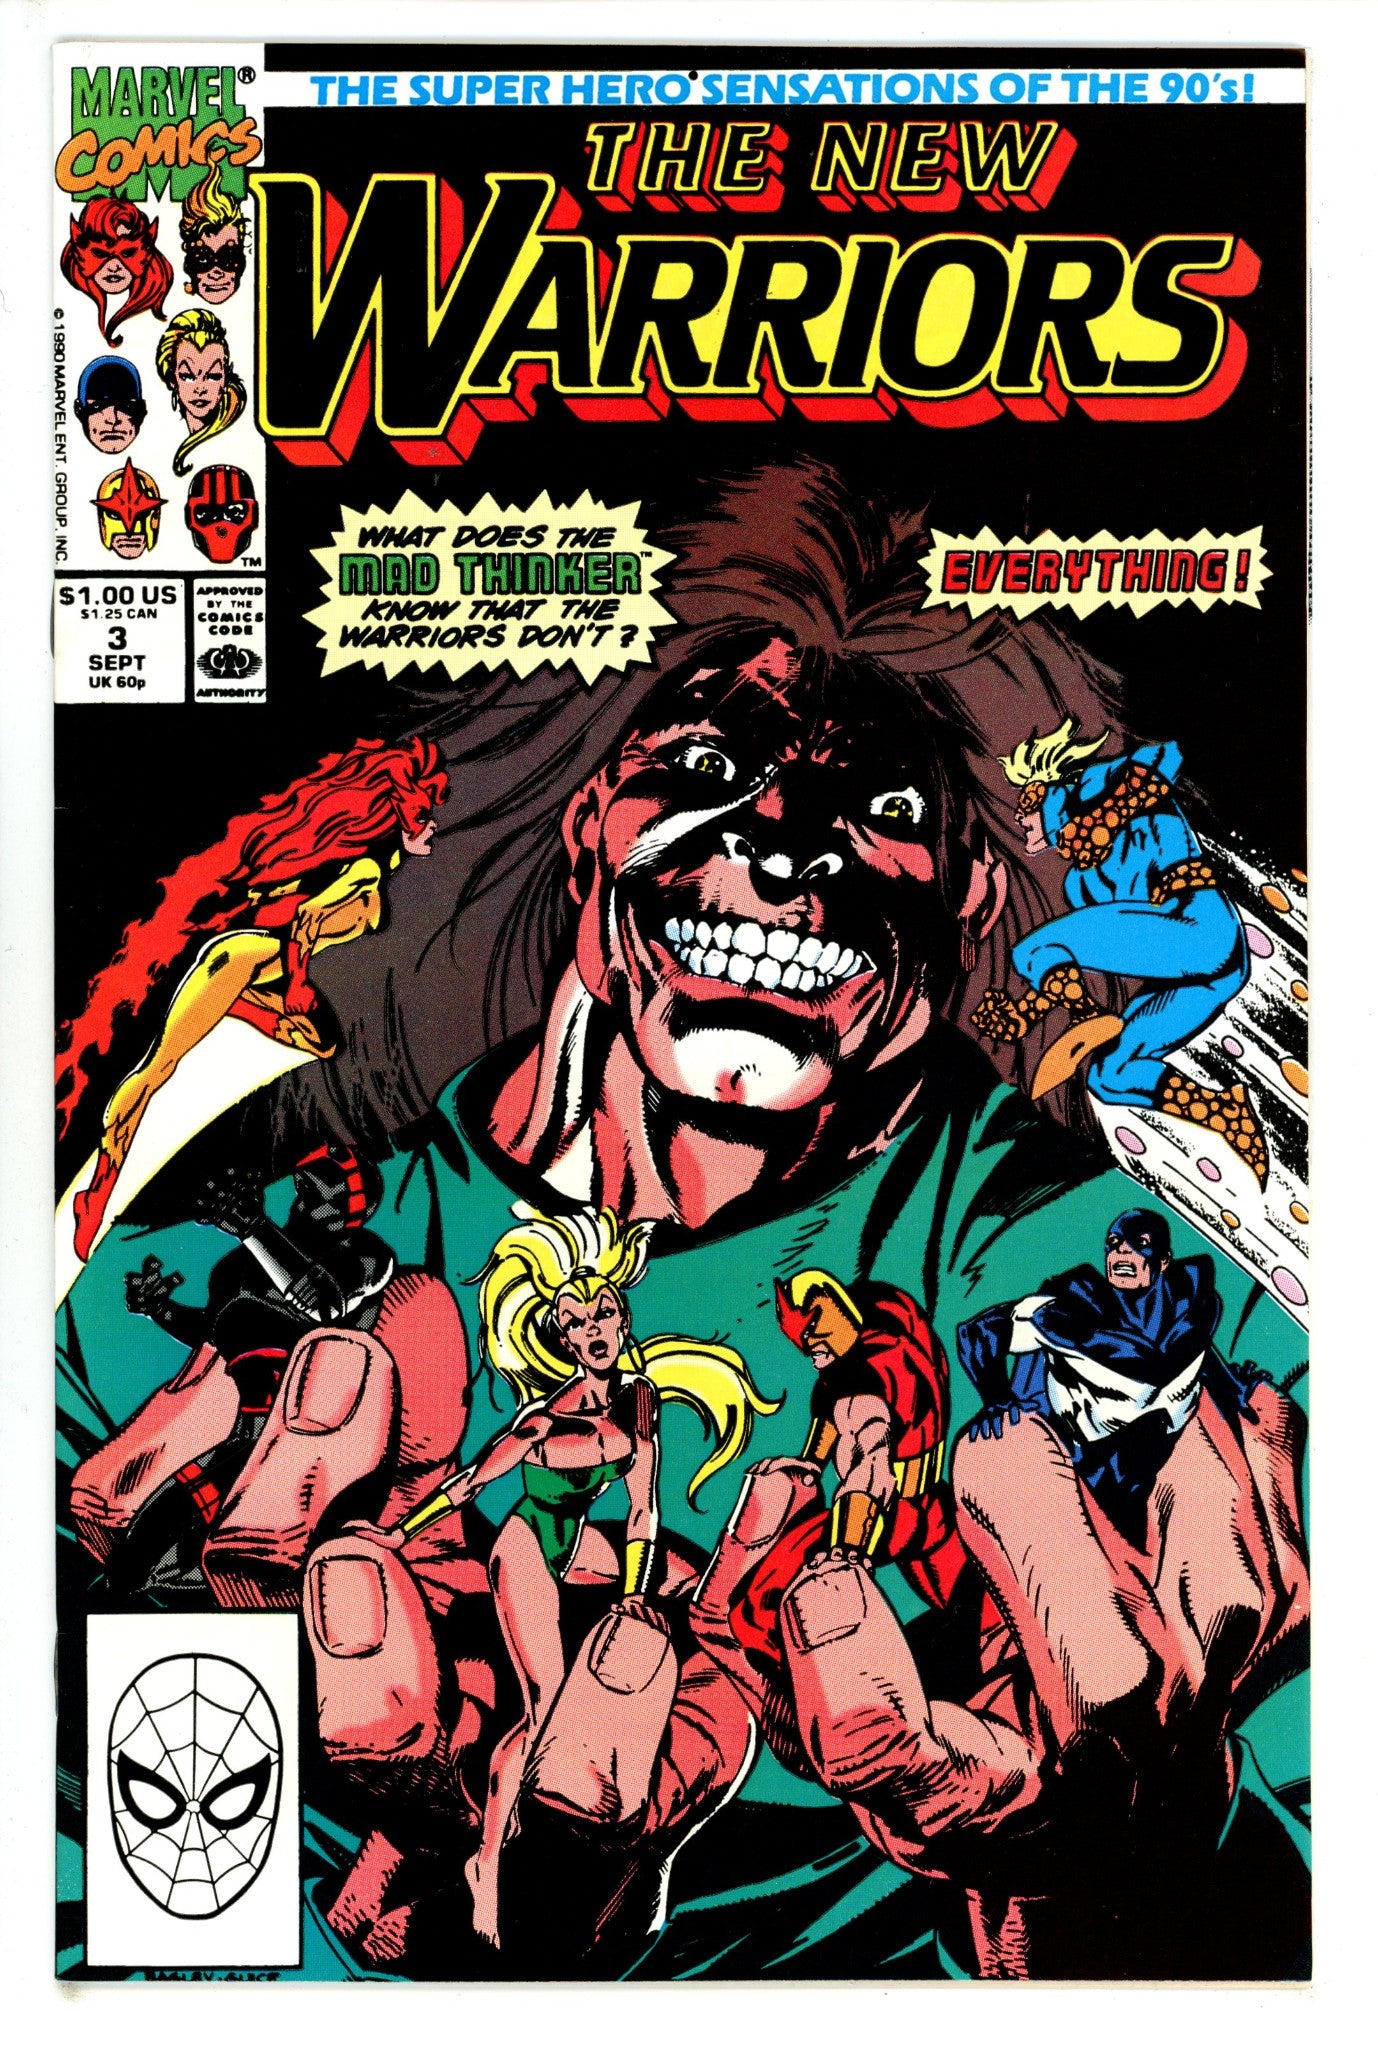 The New Warriors Vol 1 3 (1990)